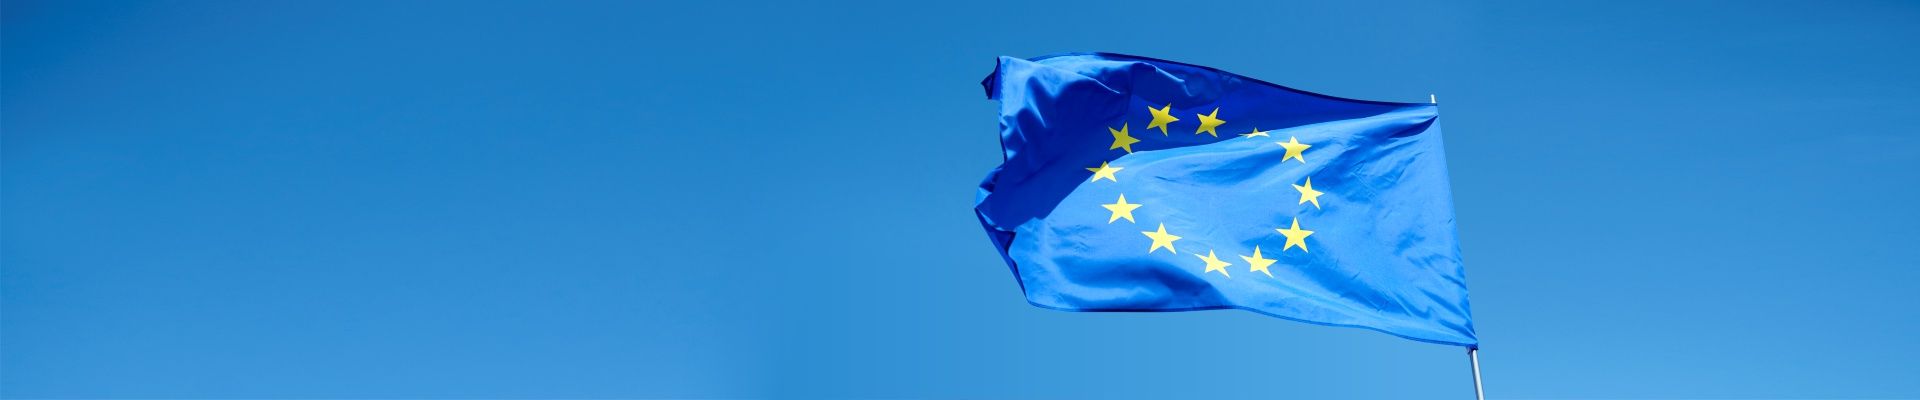 flaga unii europejskiej na tle jasnego nieba